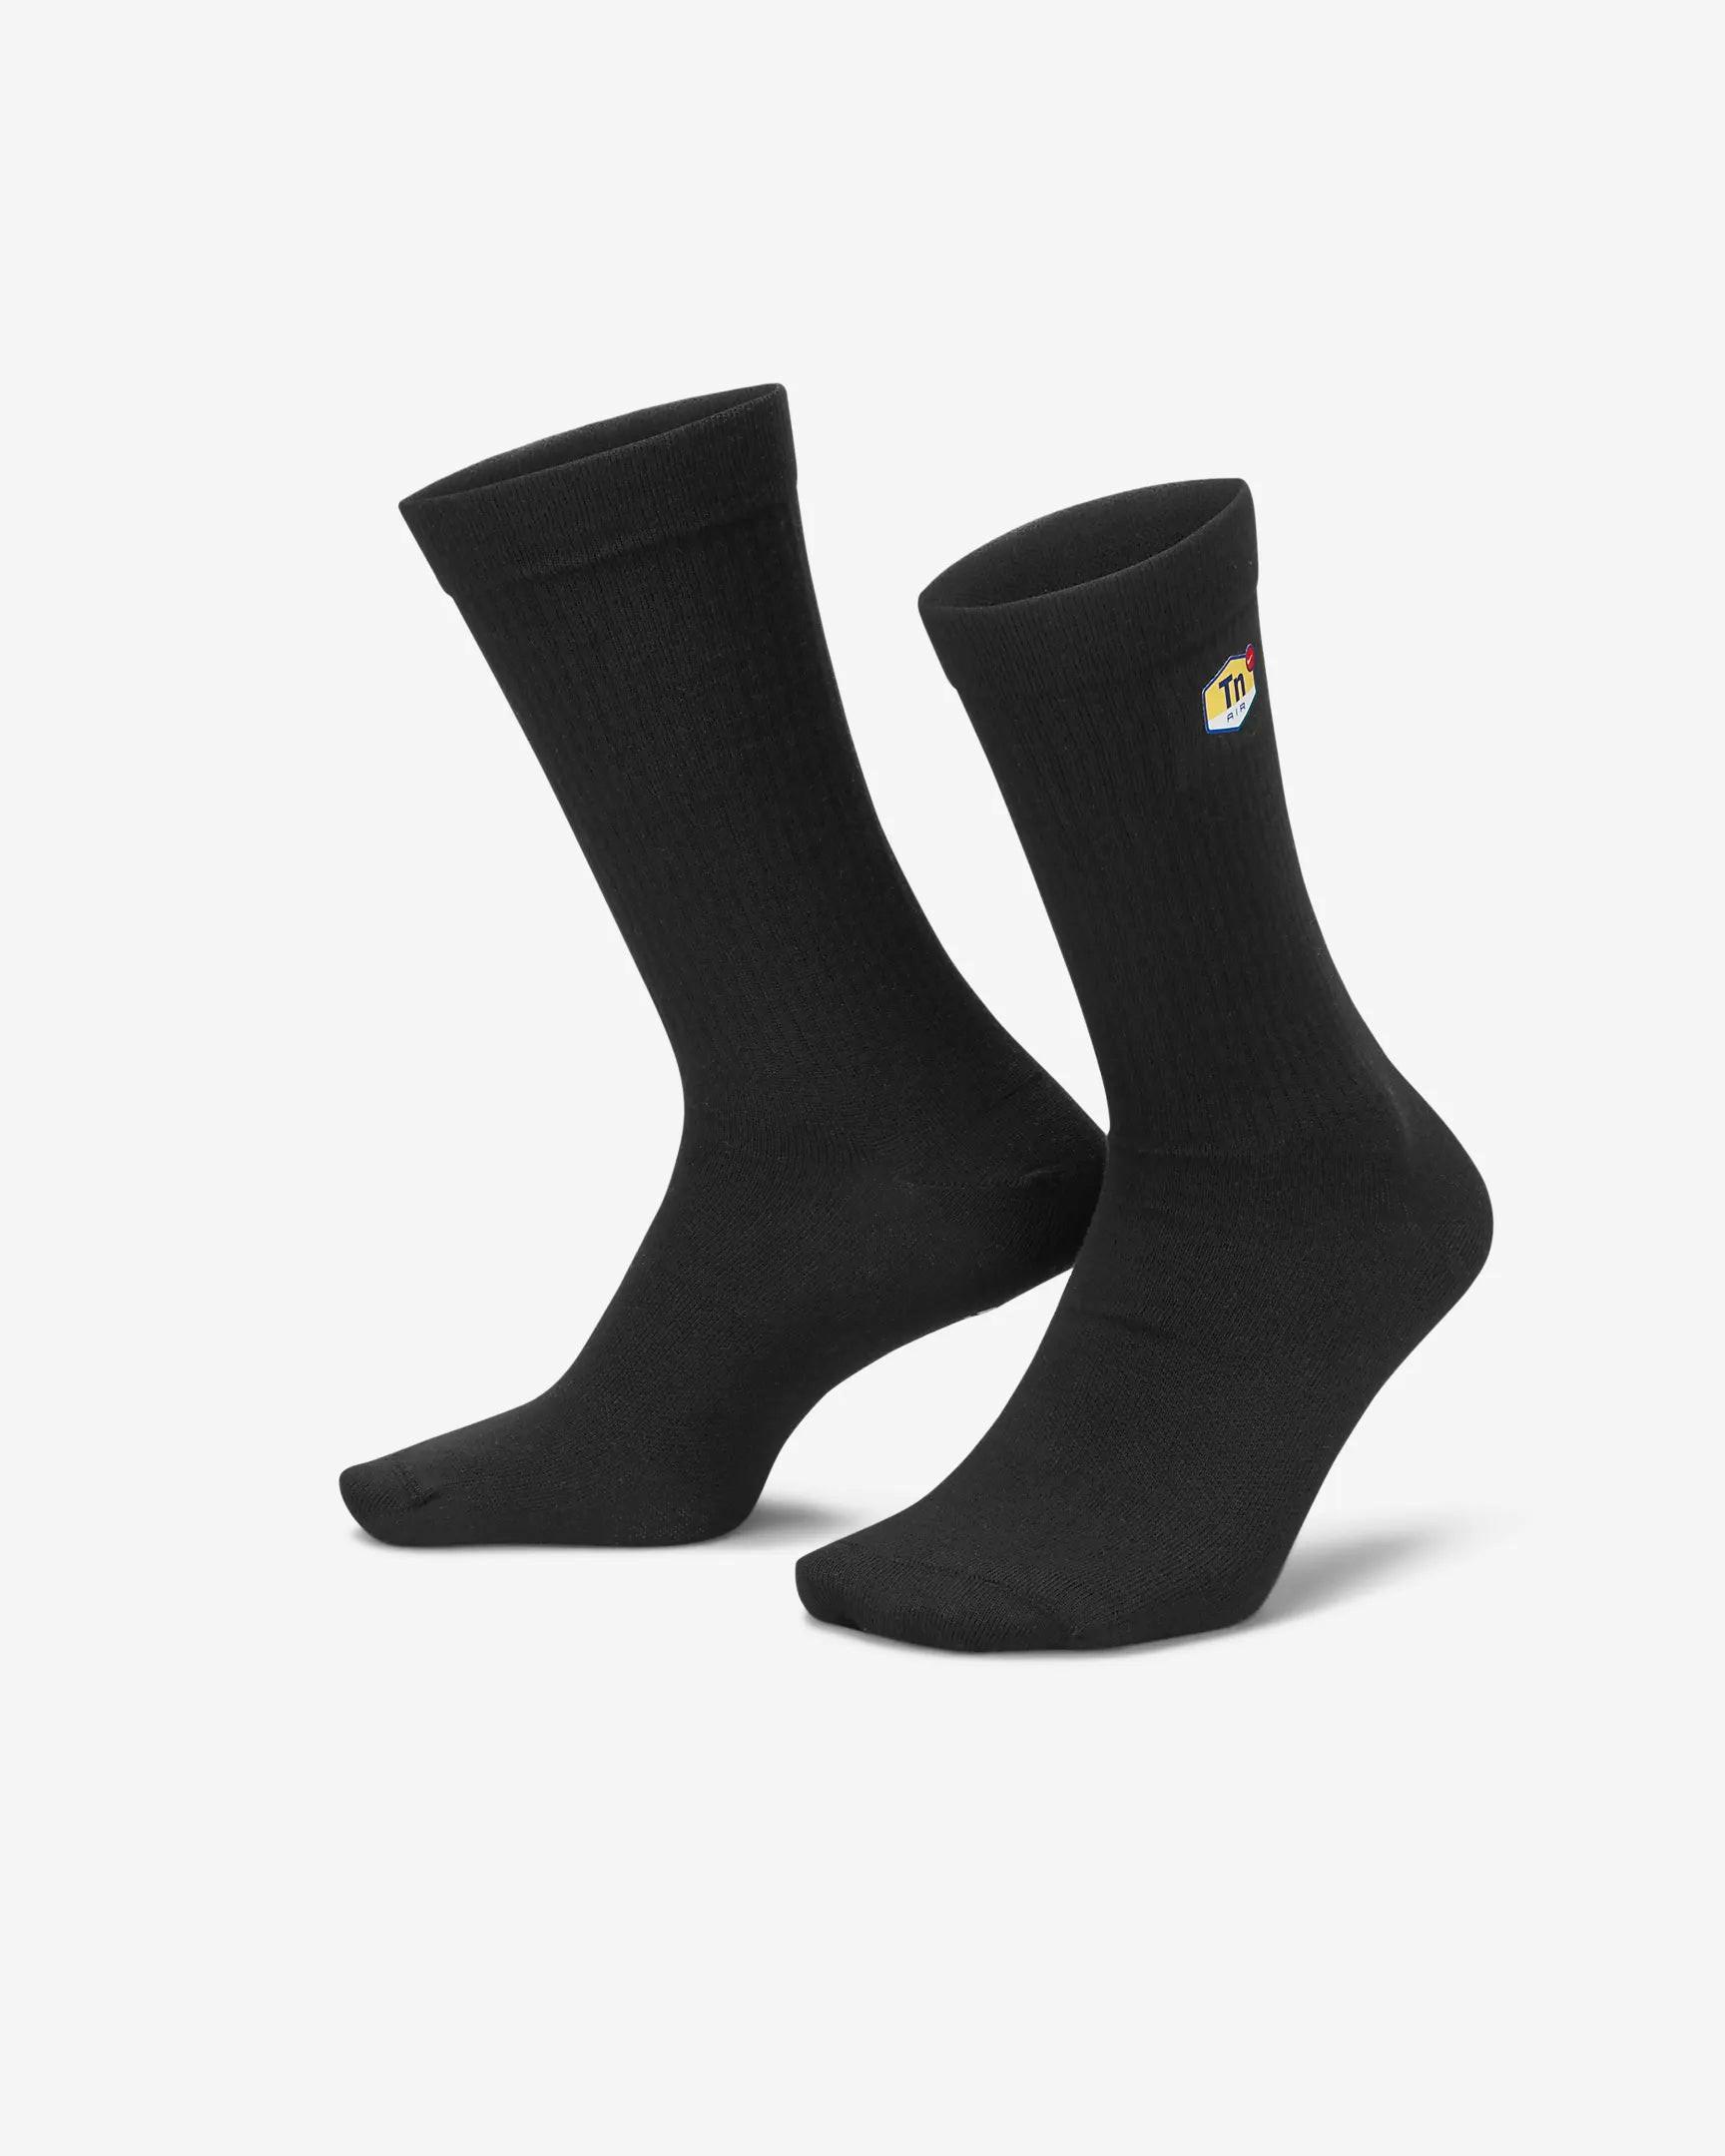 Nike Tn Socken Schwarz Damen Schwarz 34-38 von NIKE